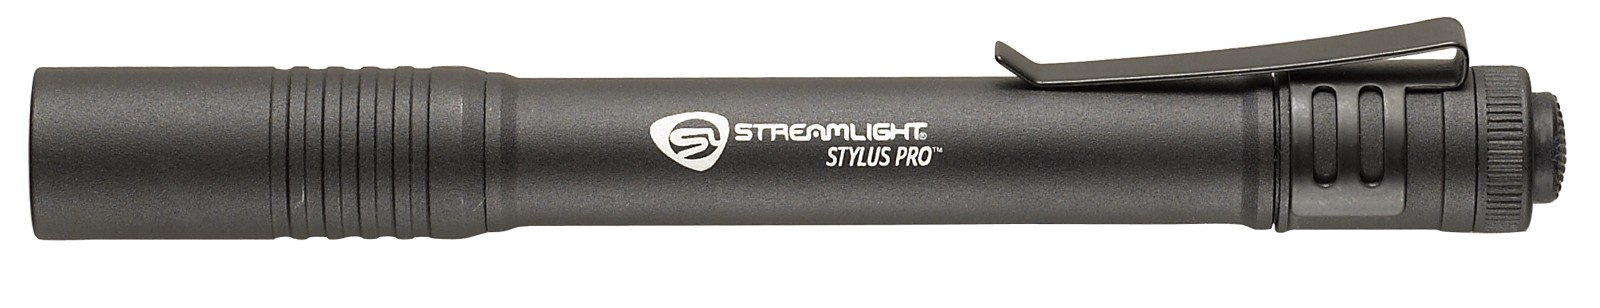 Компактный светодиодный фонарь Stylus Pro® Фото 2